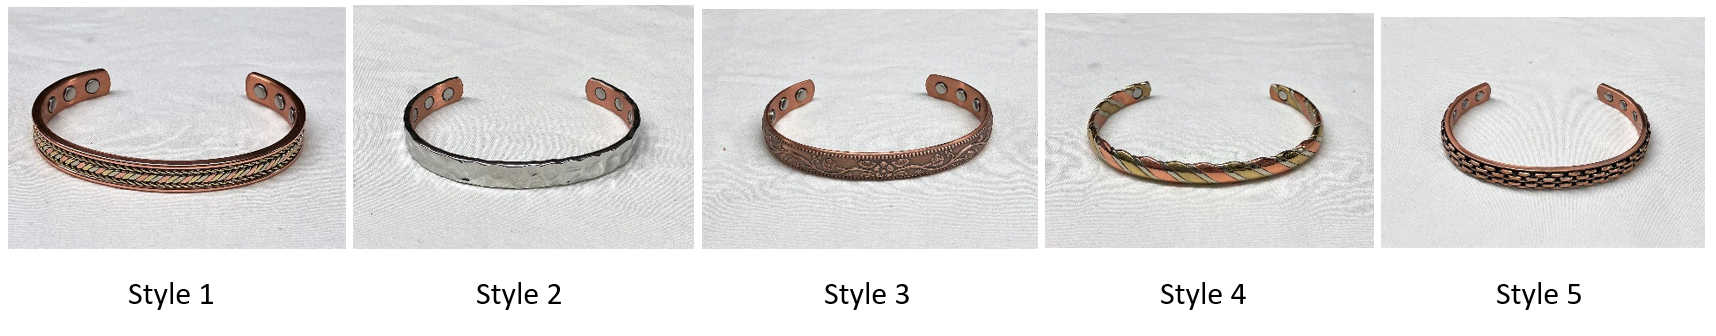 Metal Copper Bracelet Wristwire | Best Personalized | Col. Littleton